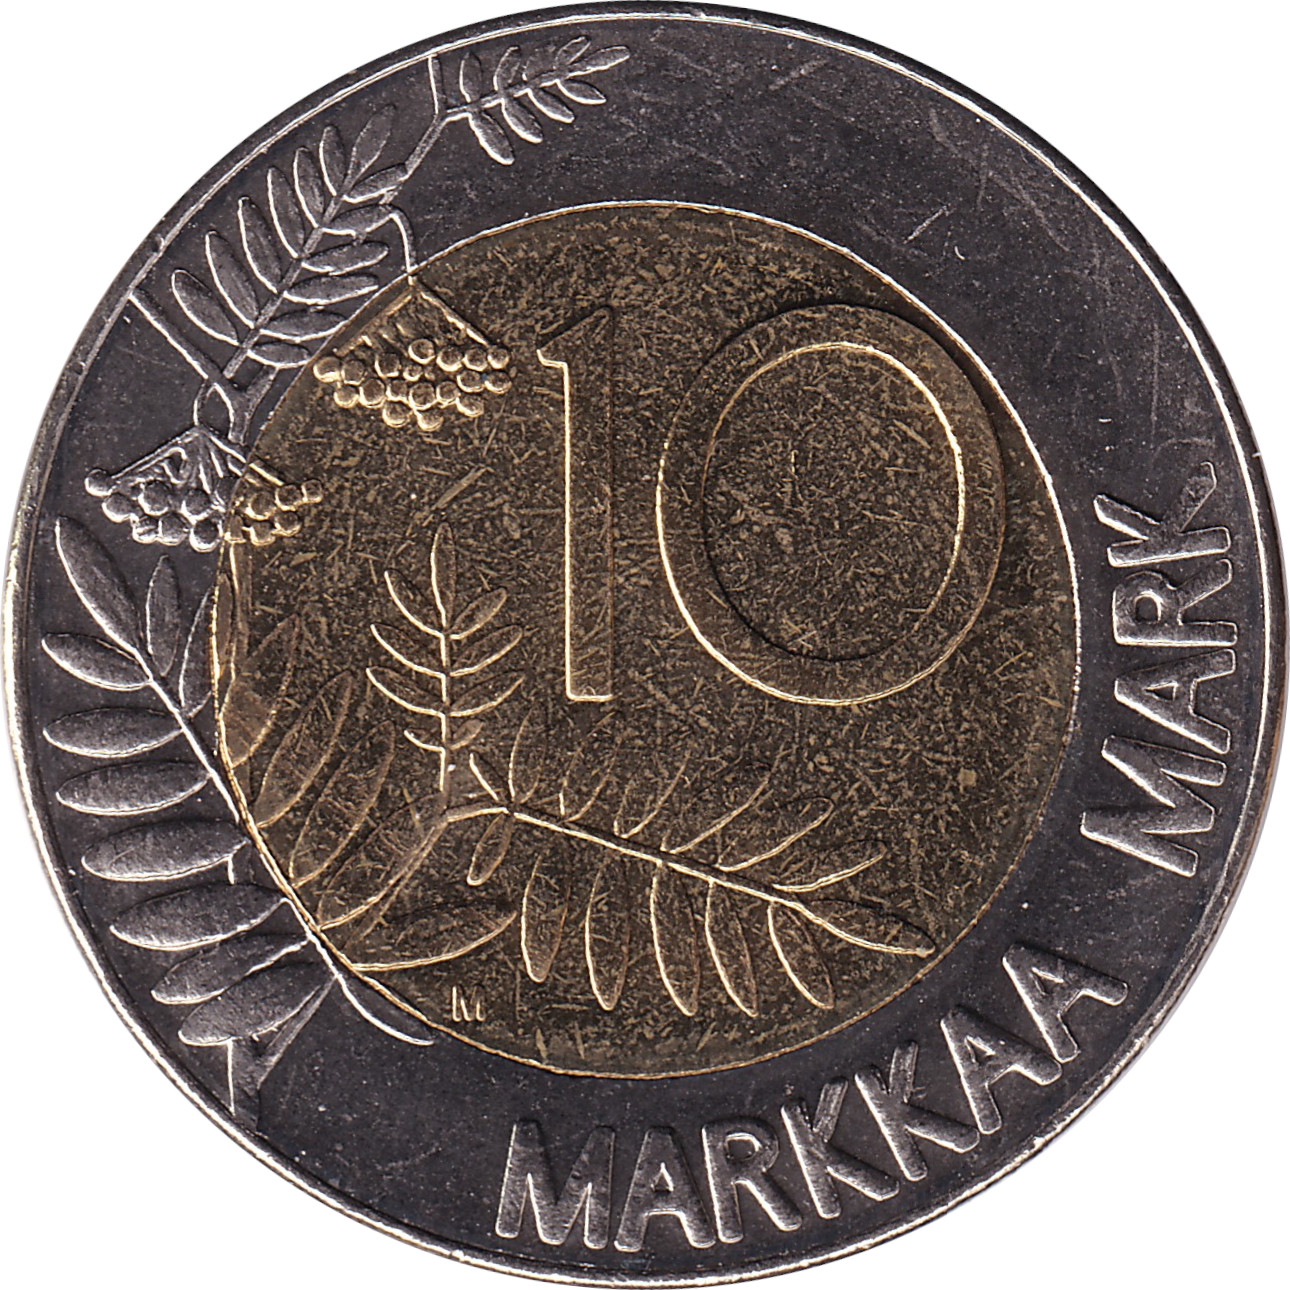 10 markkaa - Turkey